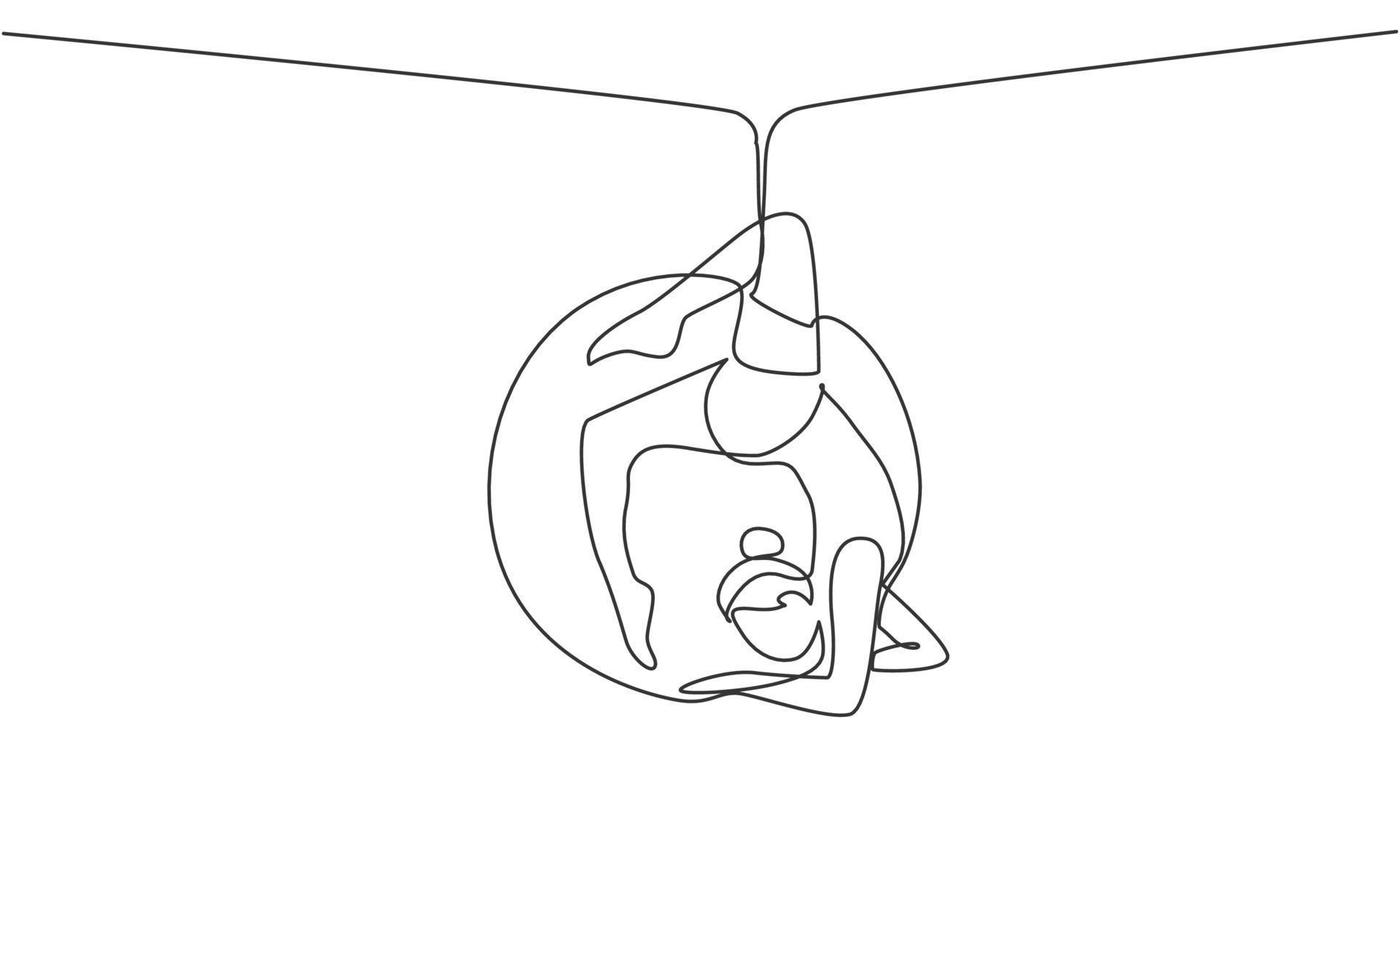 continue één lijn die een vrouwelijke acrobaat tekent die op een luchthoepel optreedt door een cirkel rond haar lichaam te vormen. het vergt moed en neemt risico's. enkele lijn tekenen ontwerp vector grafische afbeelding.